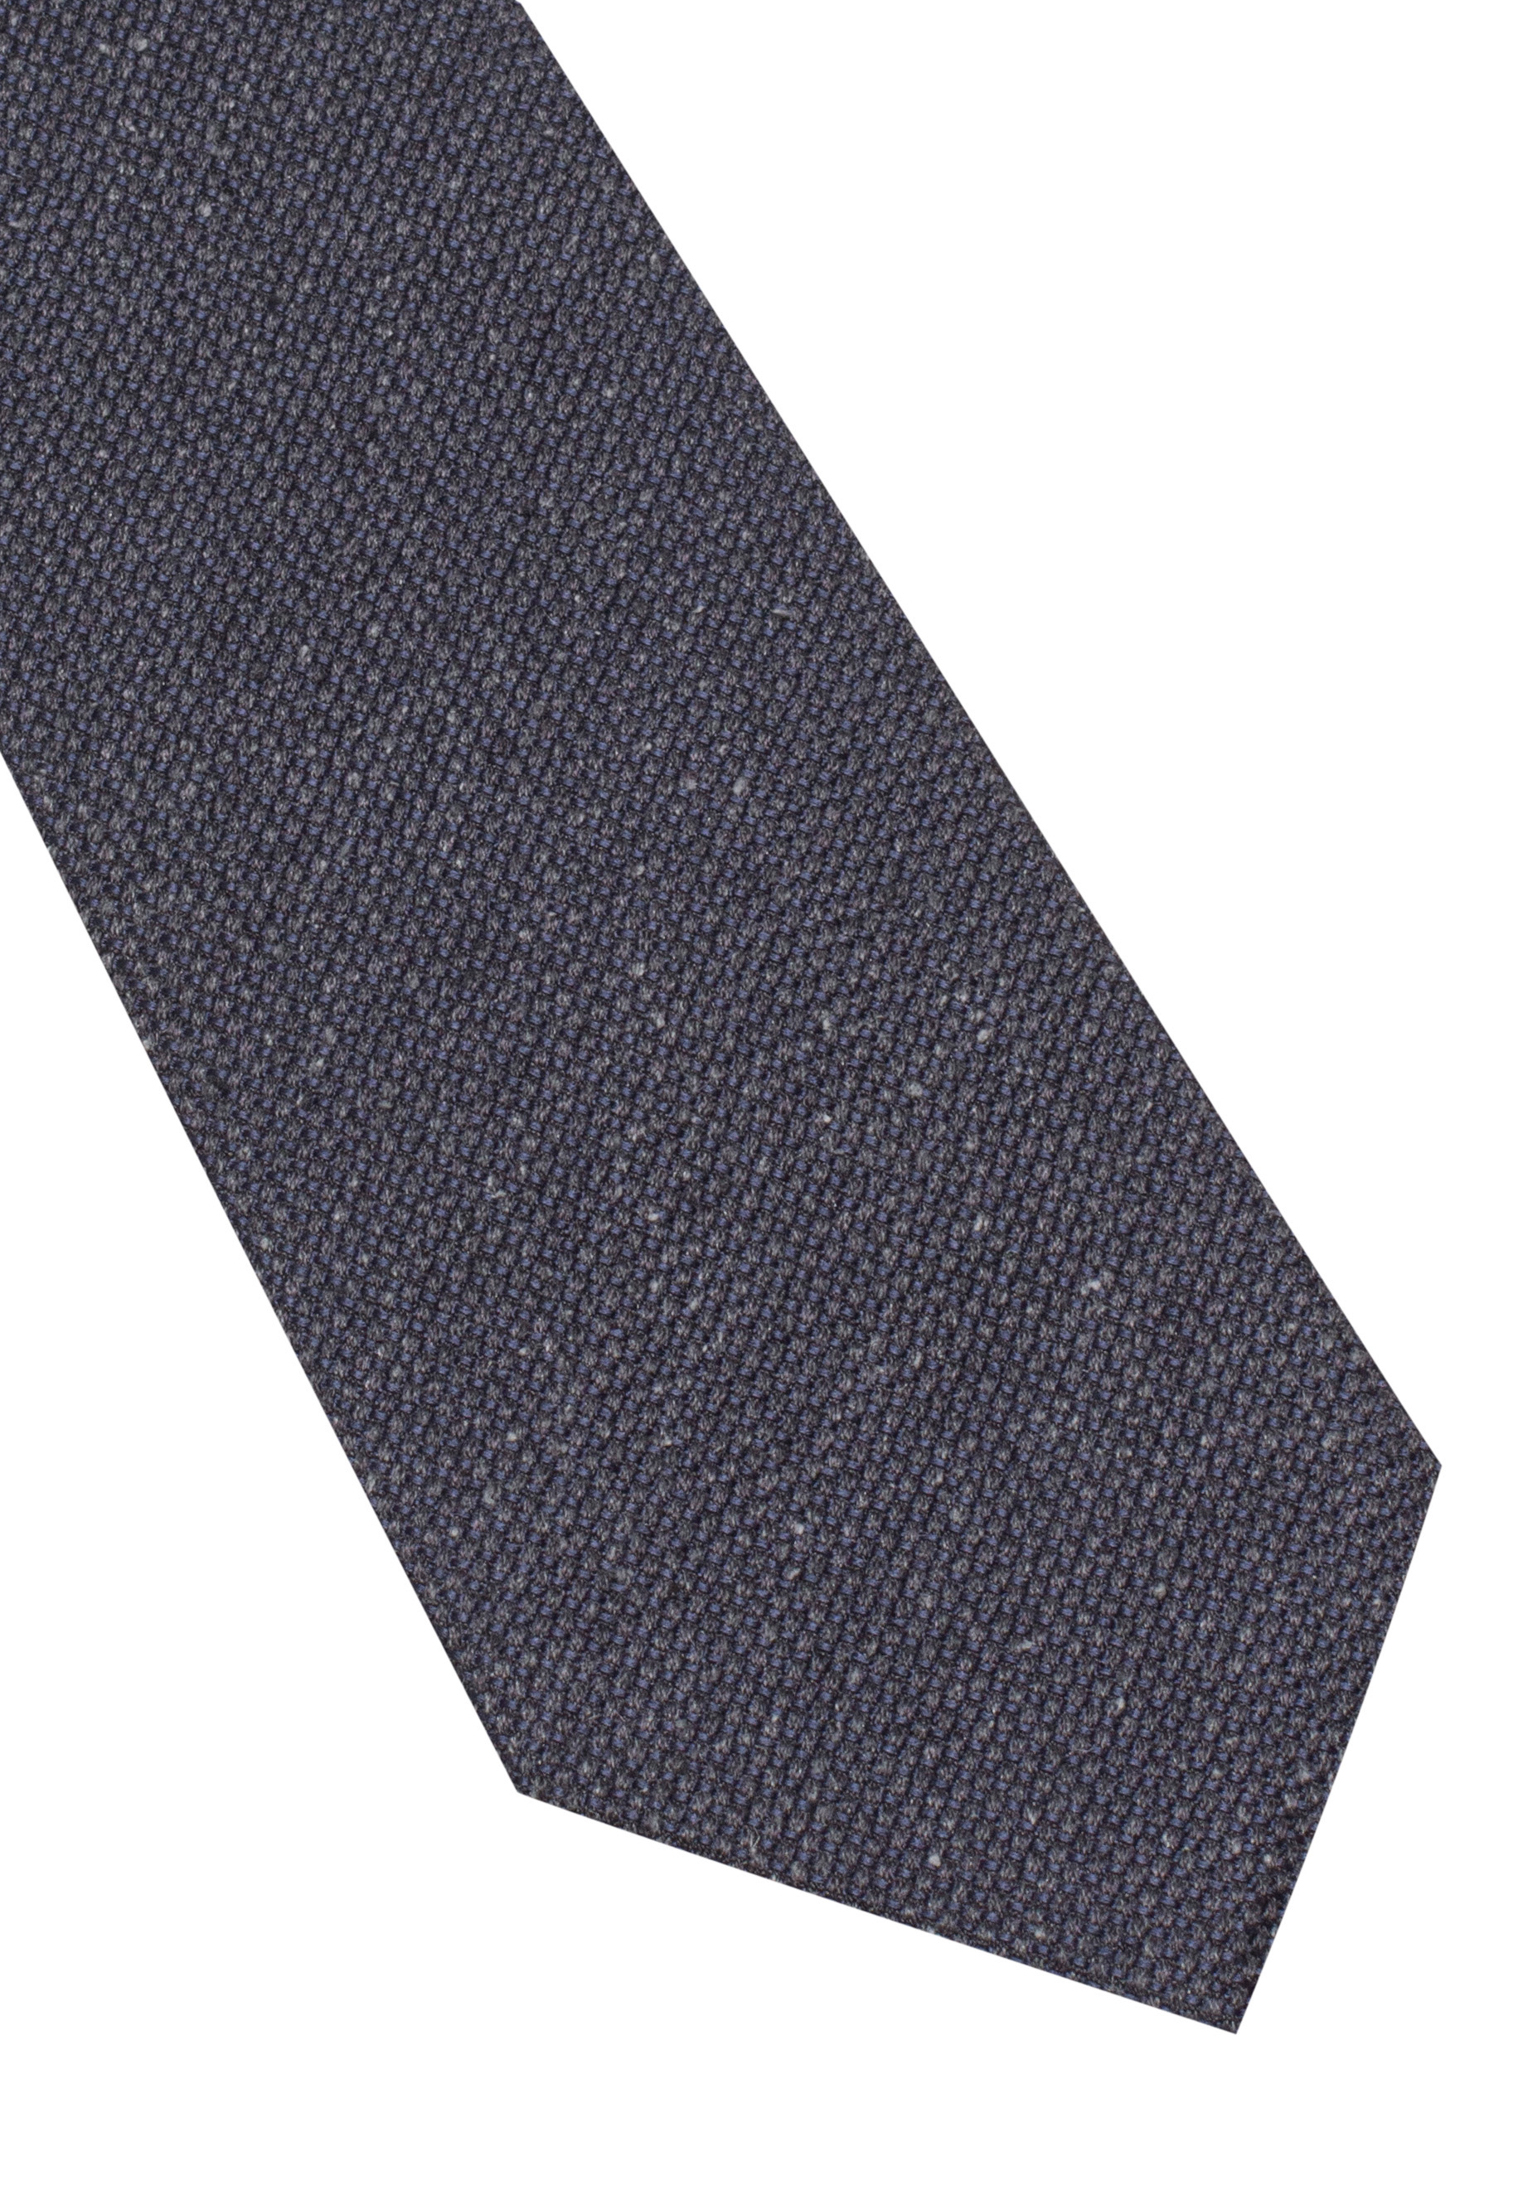 Cravate gris uni